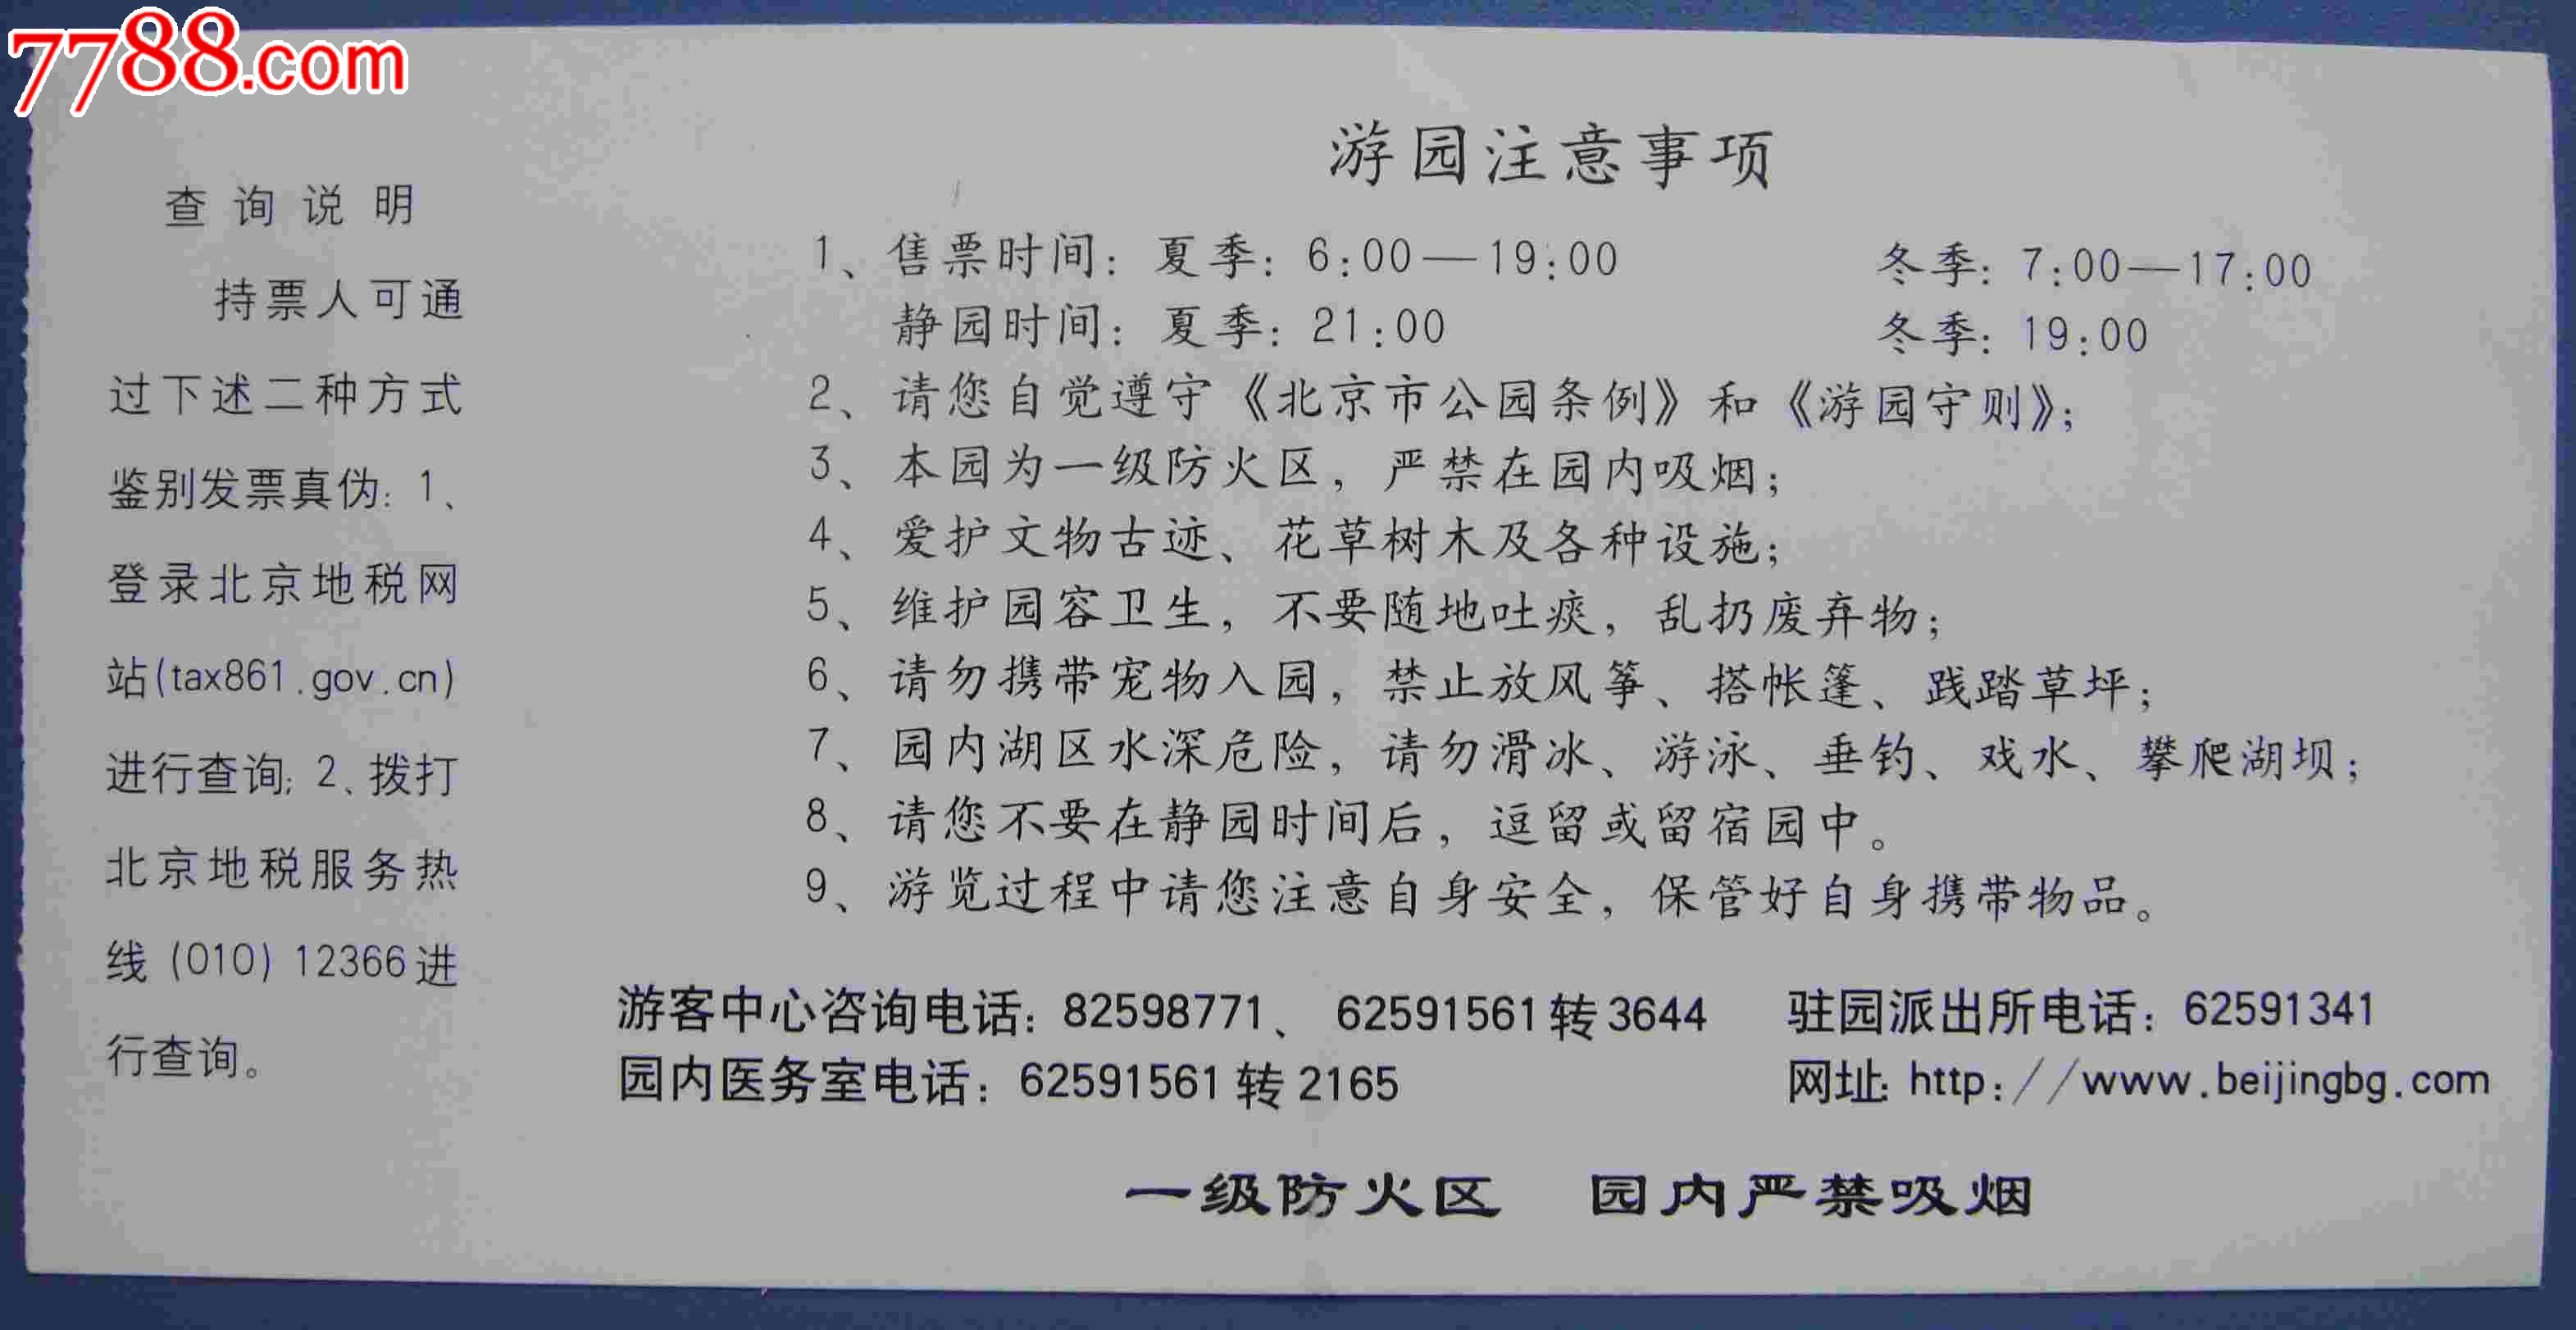 北京植物园门票-价格:1元-se22586777-旅游景